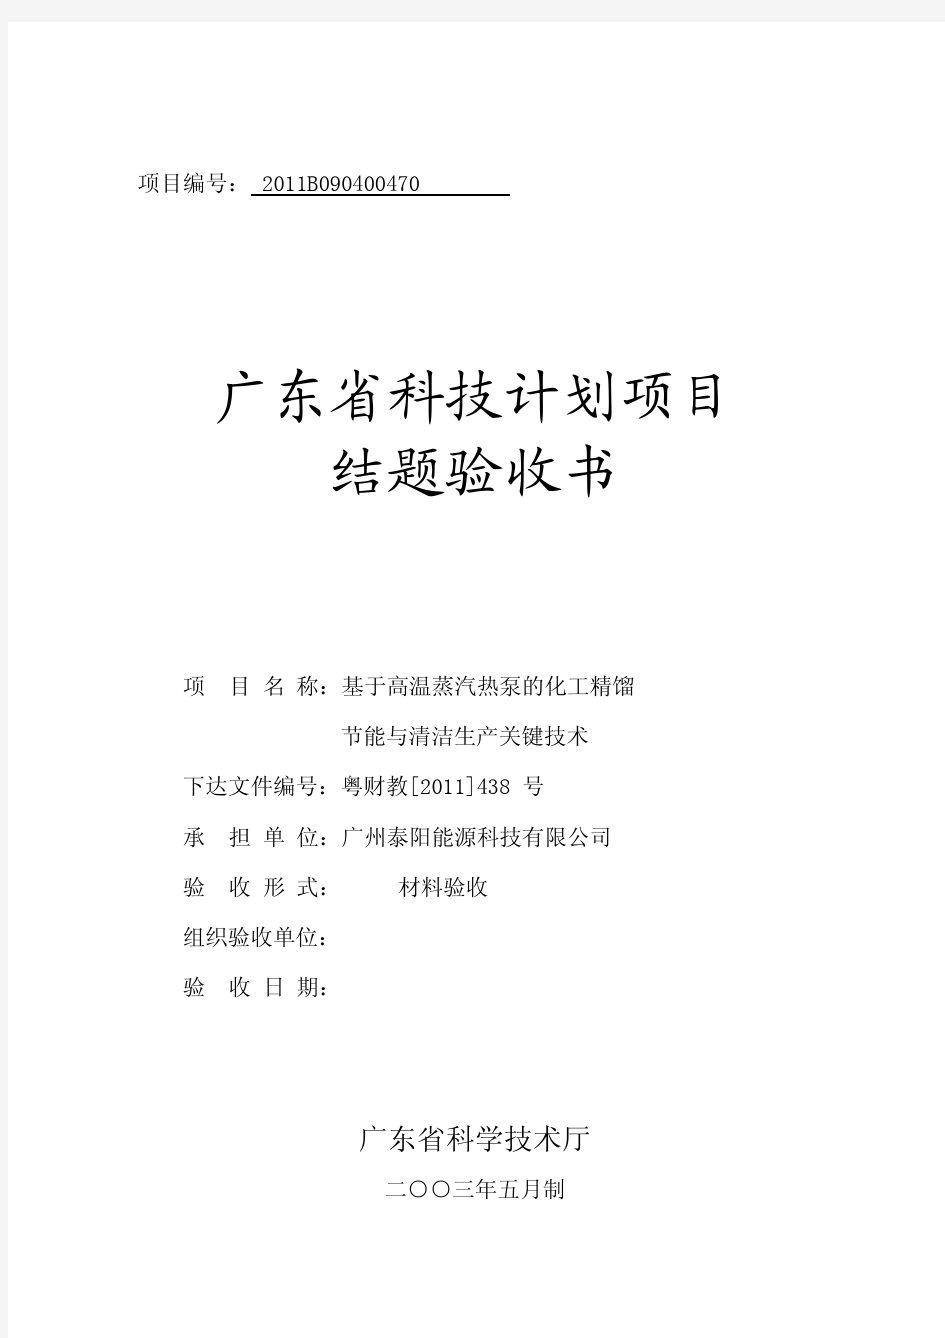 2、广东省科技计划项目结题验收书20130413